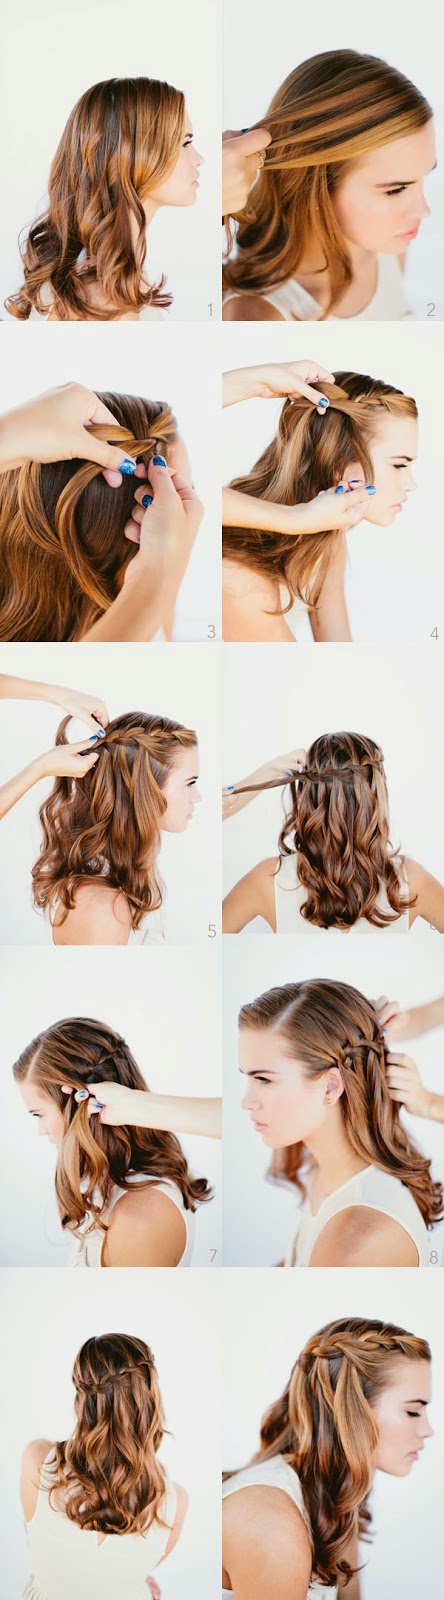 O Puro Glamour ...: 10 penteados bonitos que você pode fazer em 10 minutos